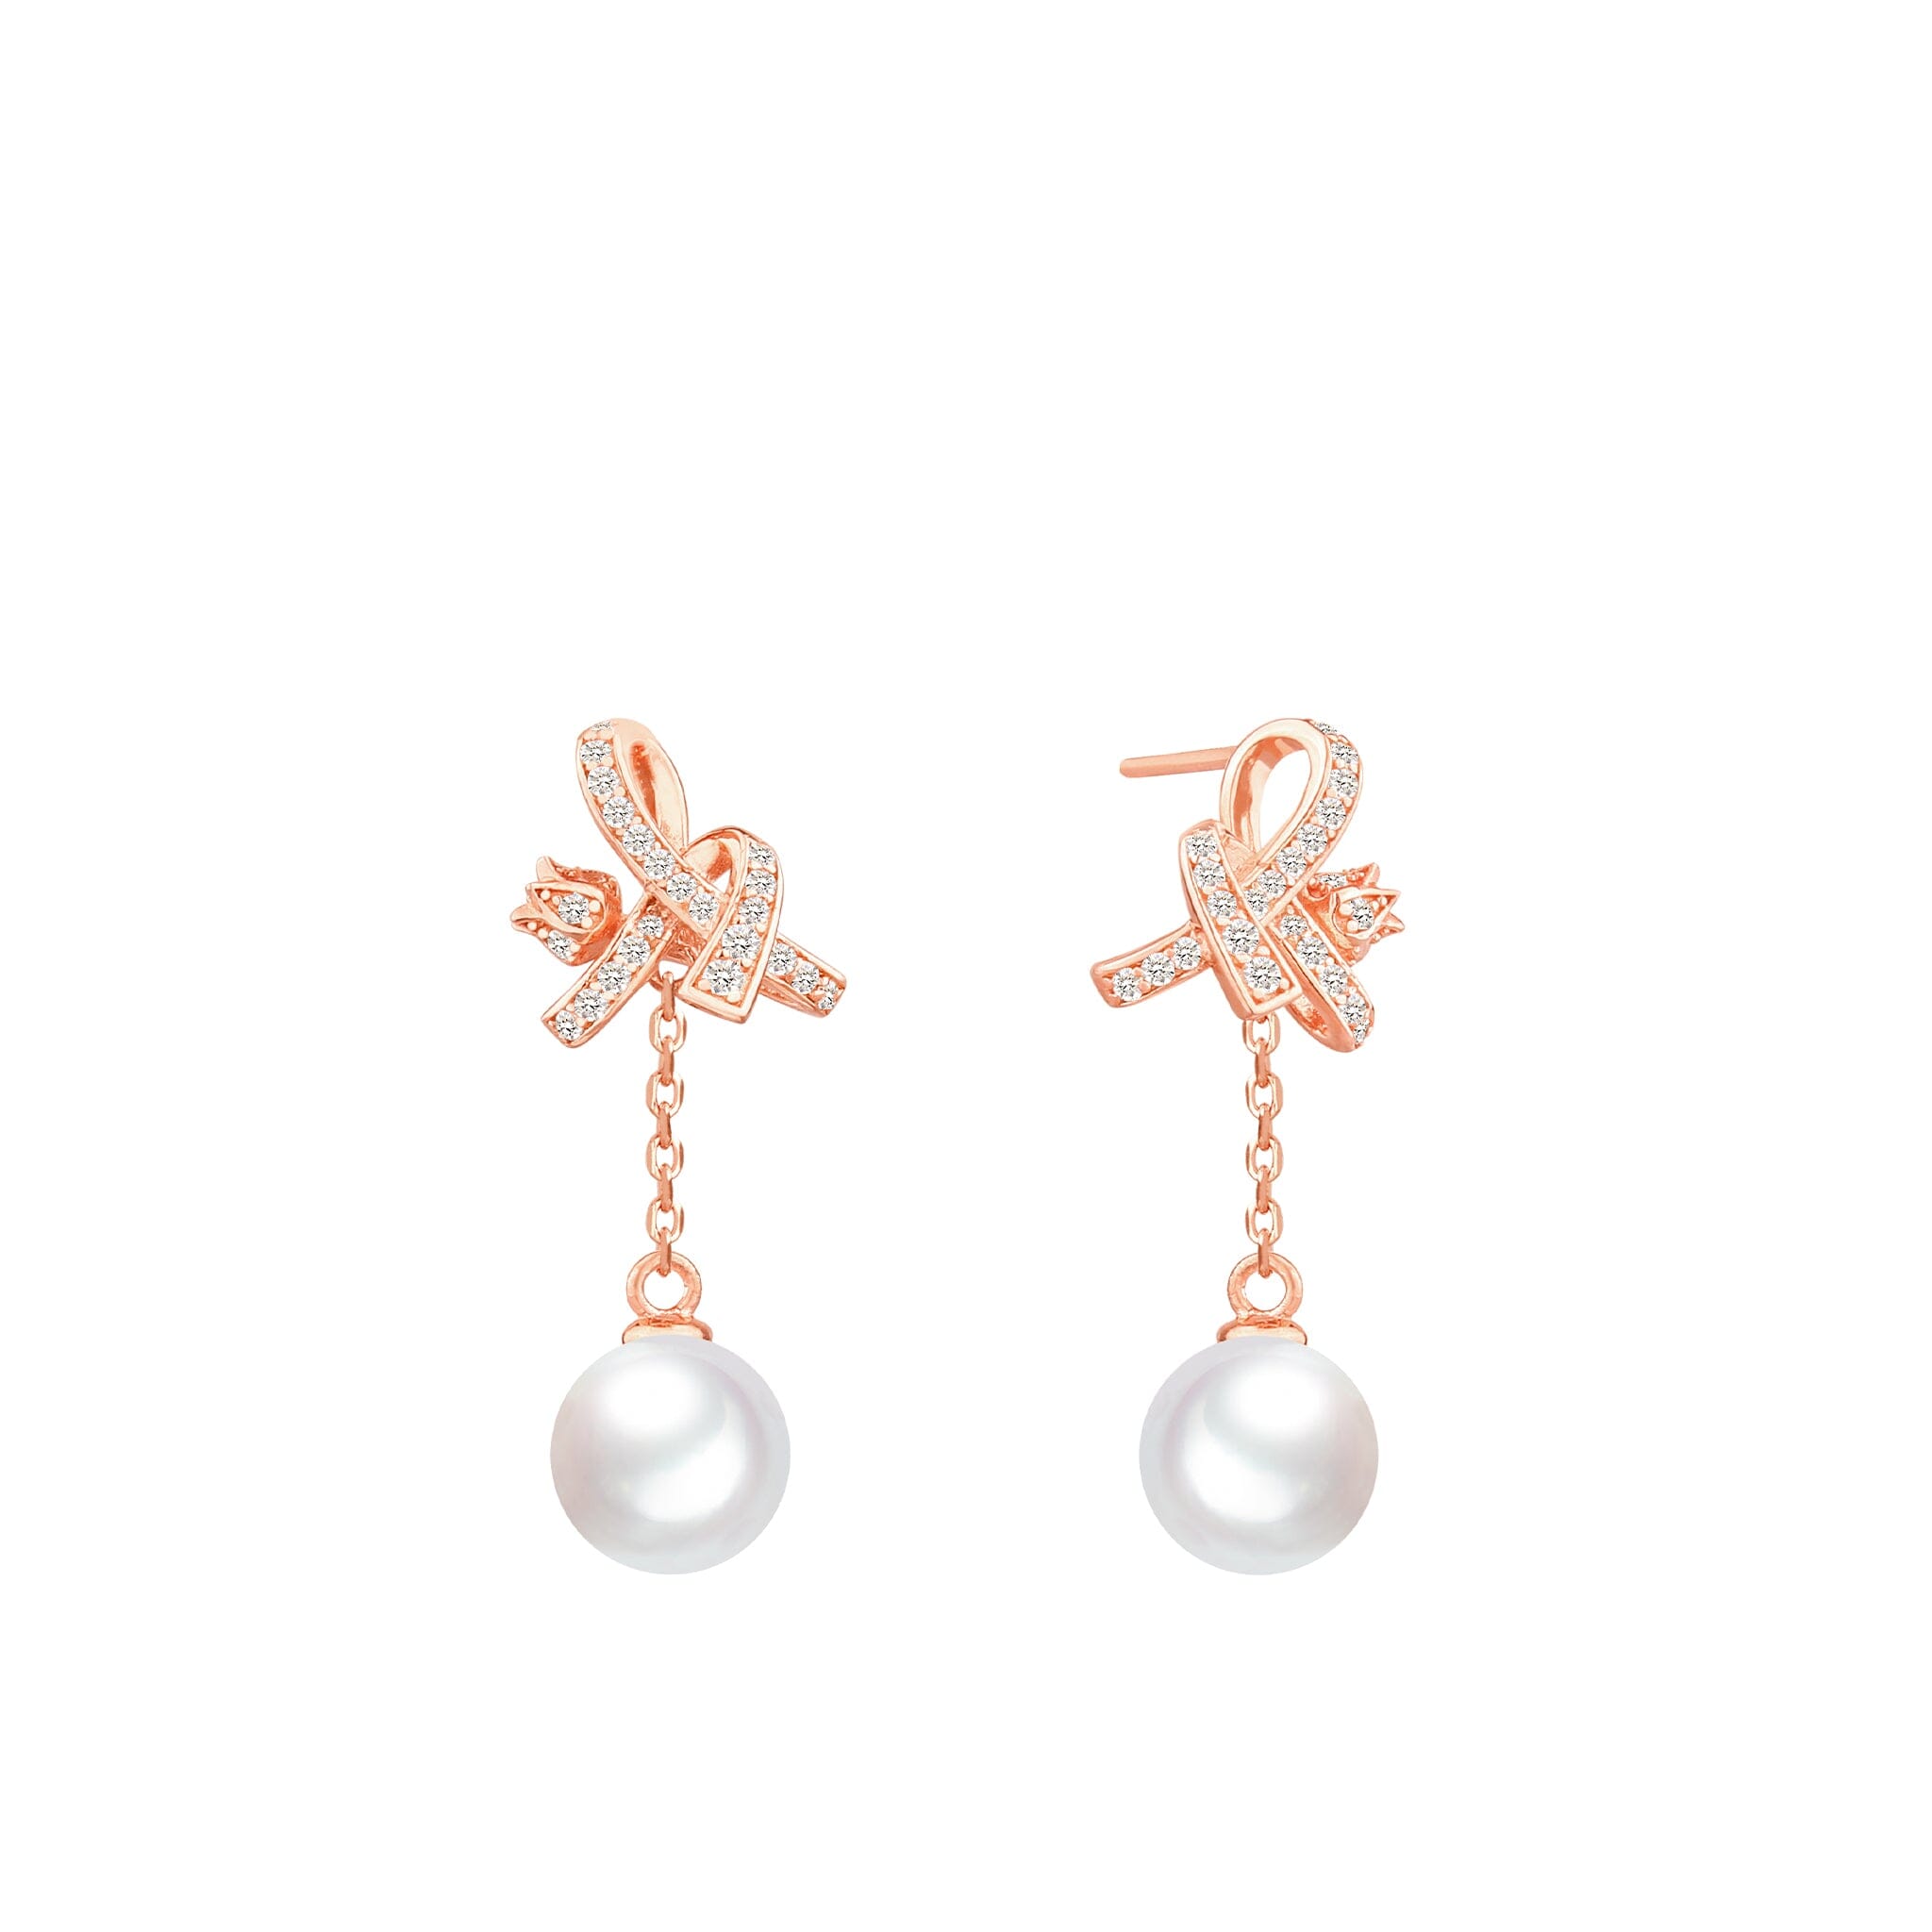 Women's Silver Drop Earrings with White Pearl Earrings AWNL 